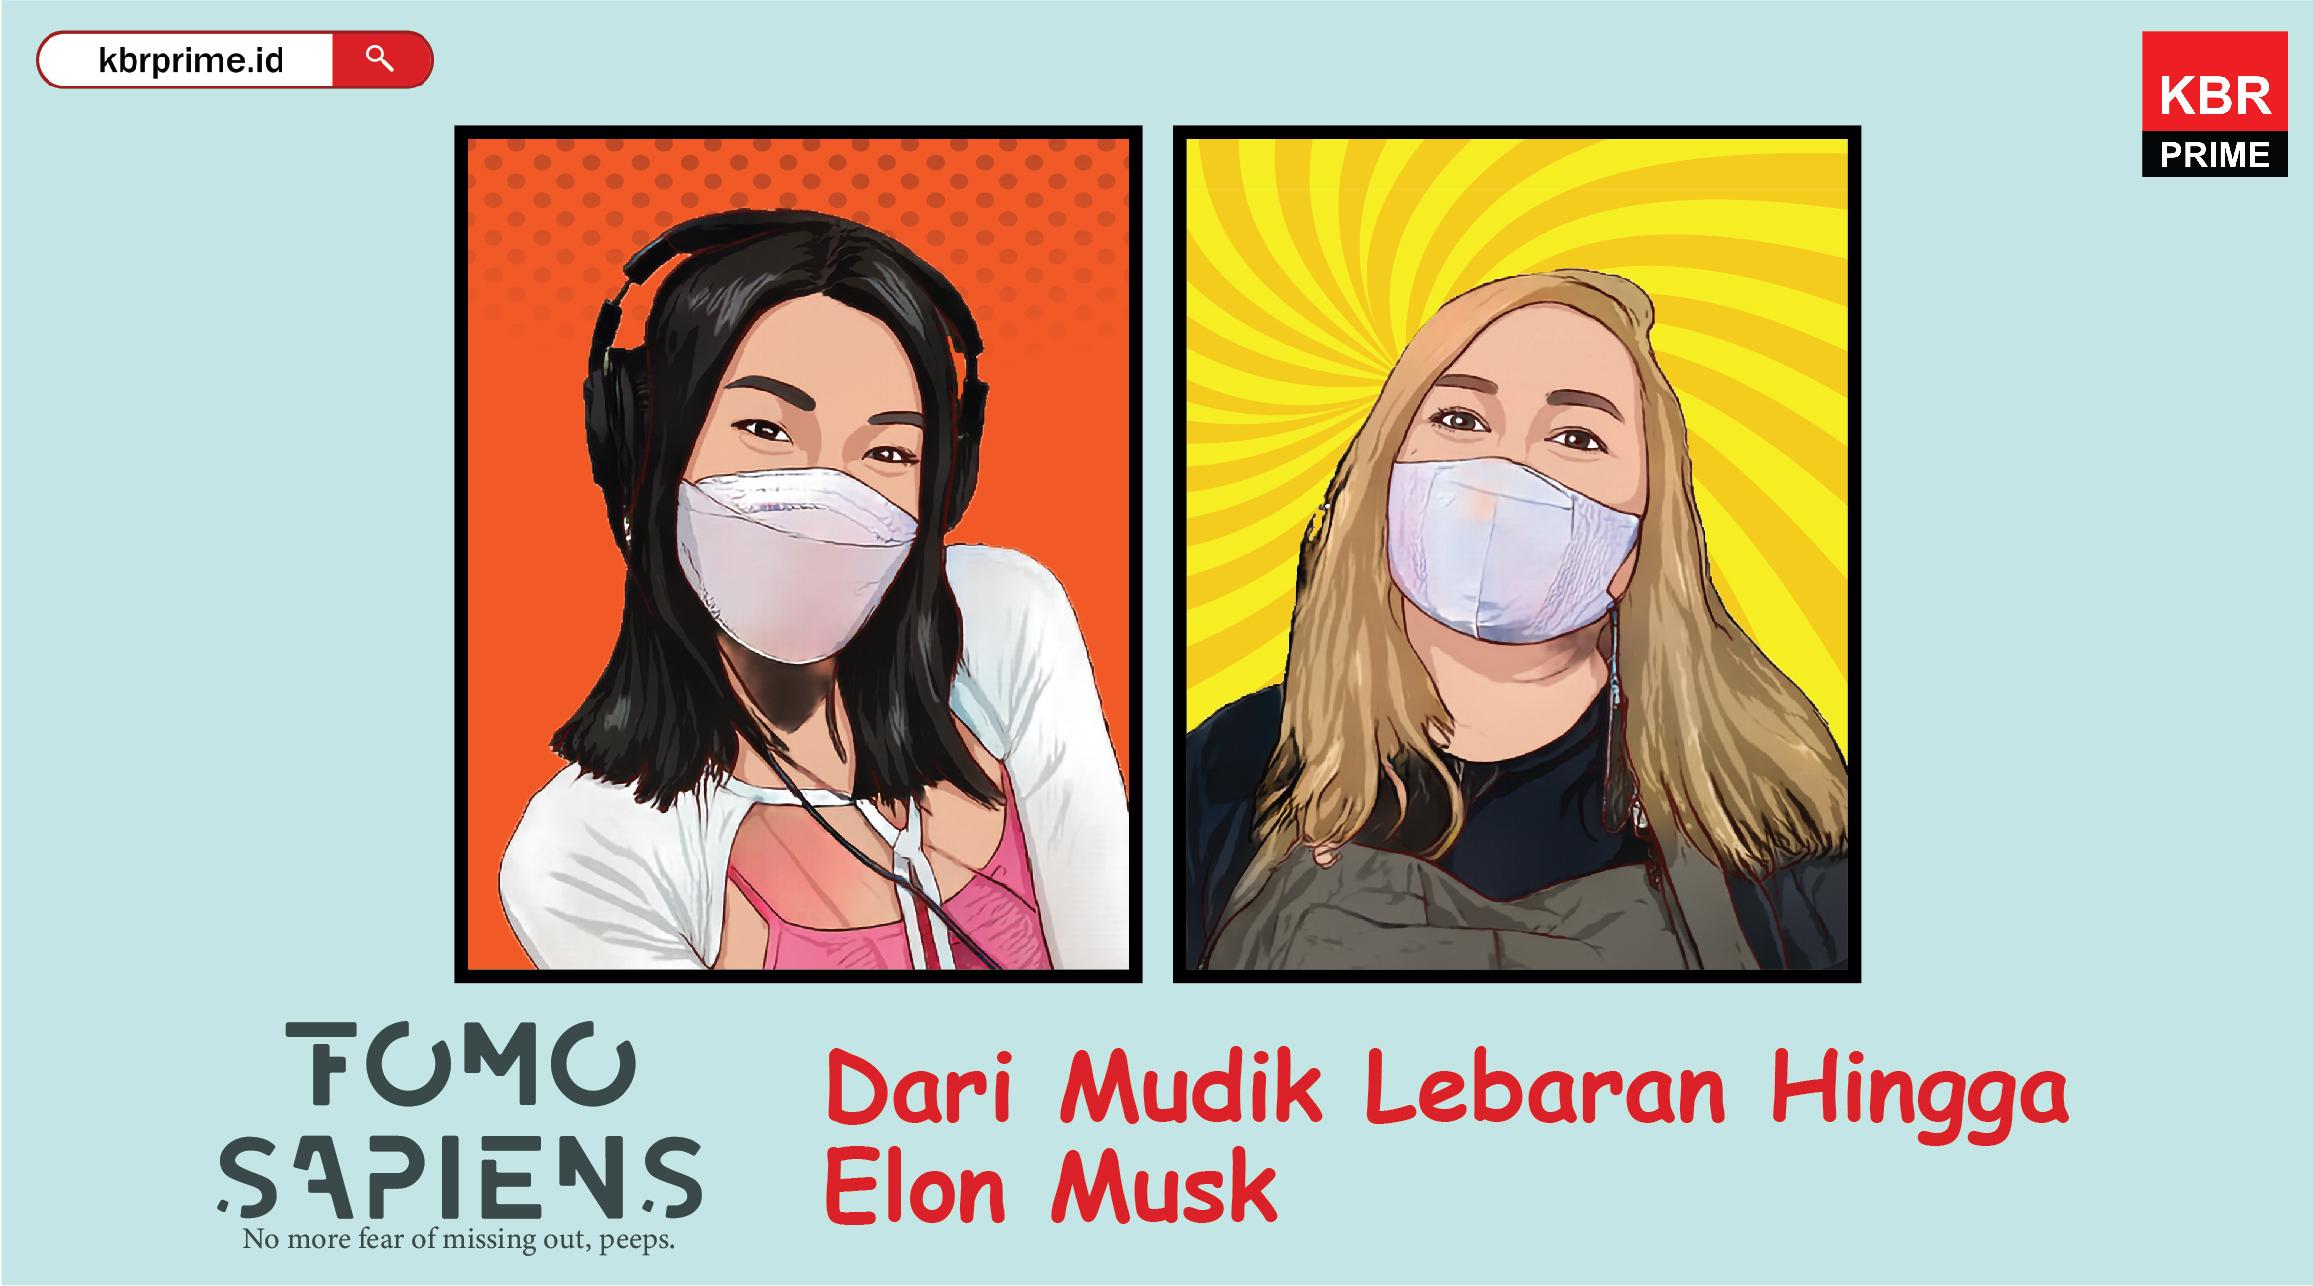 FOMO Sapiens : Dari Mudik Lebaran Hingga Elon Musk